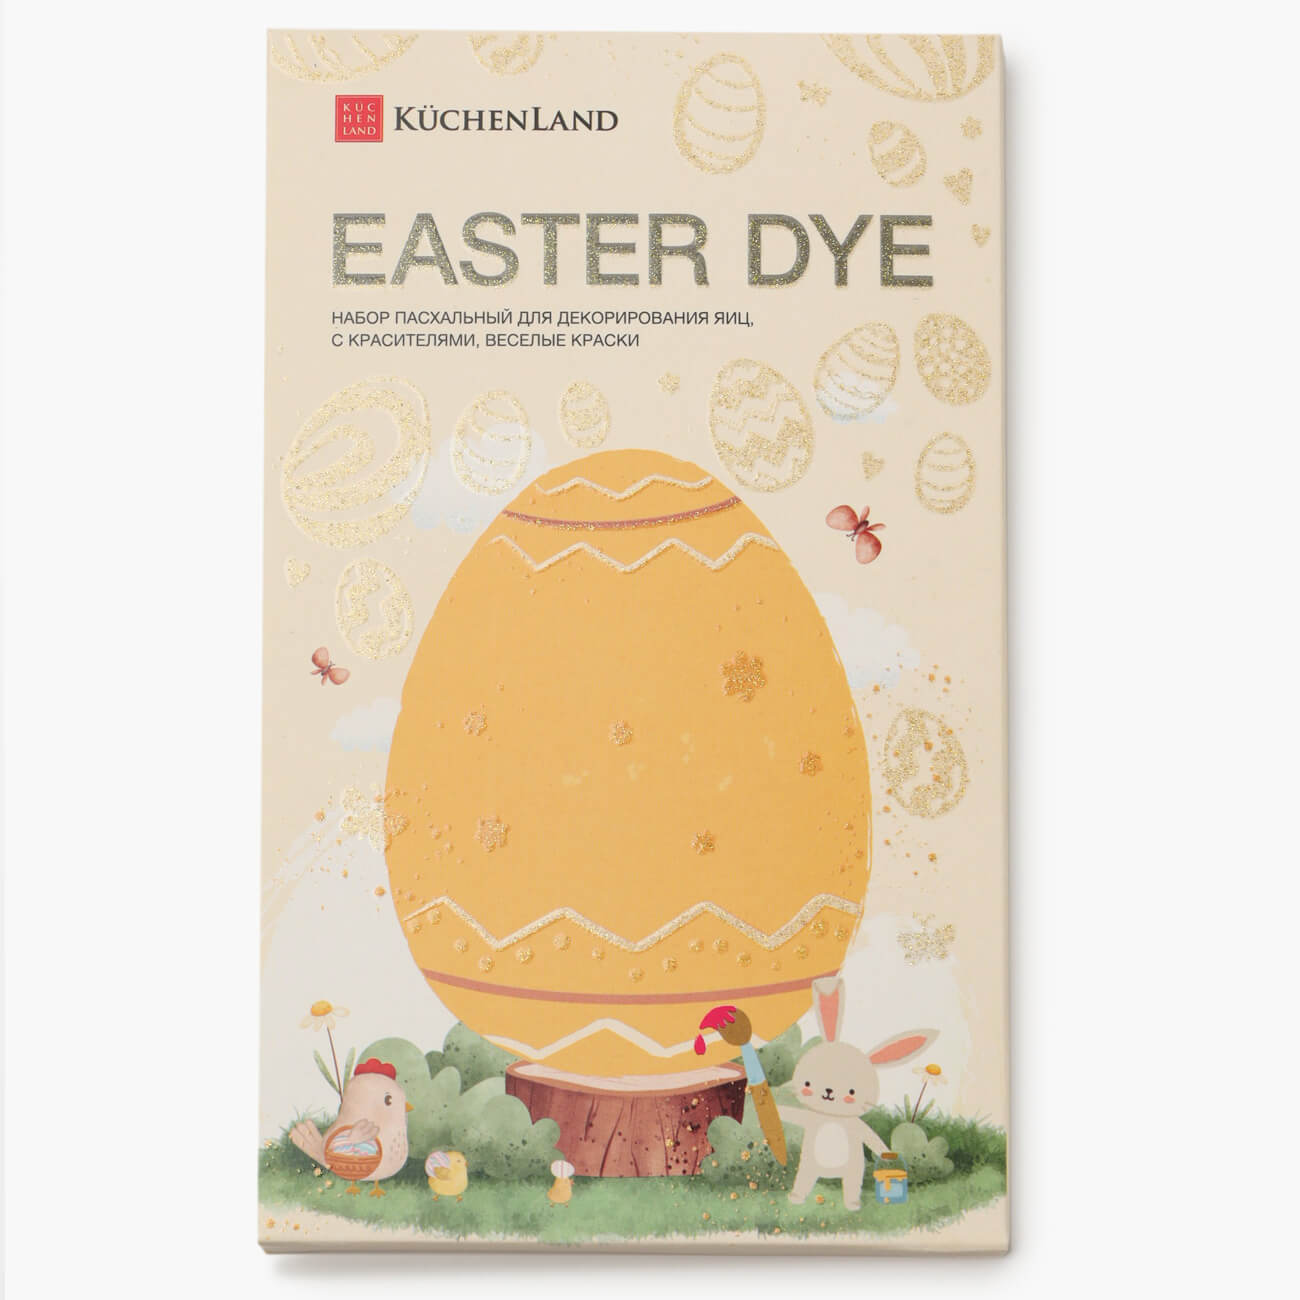 Набор пасхальный для декорирования яиц, 7 цветов/13 пр, Веселые краски, Easter dye веселые филворды